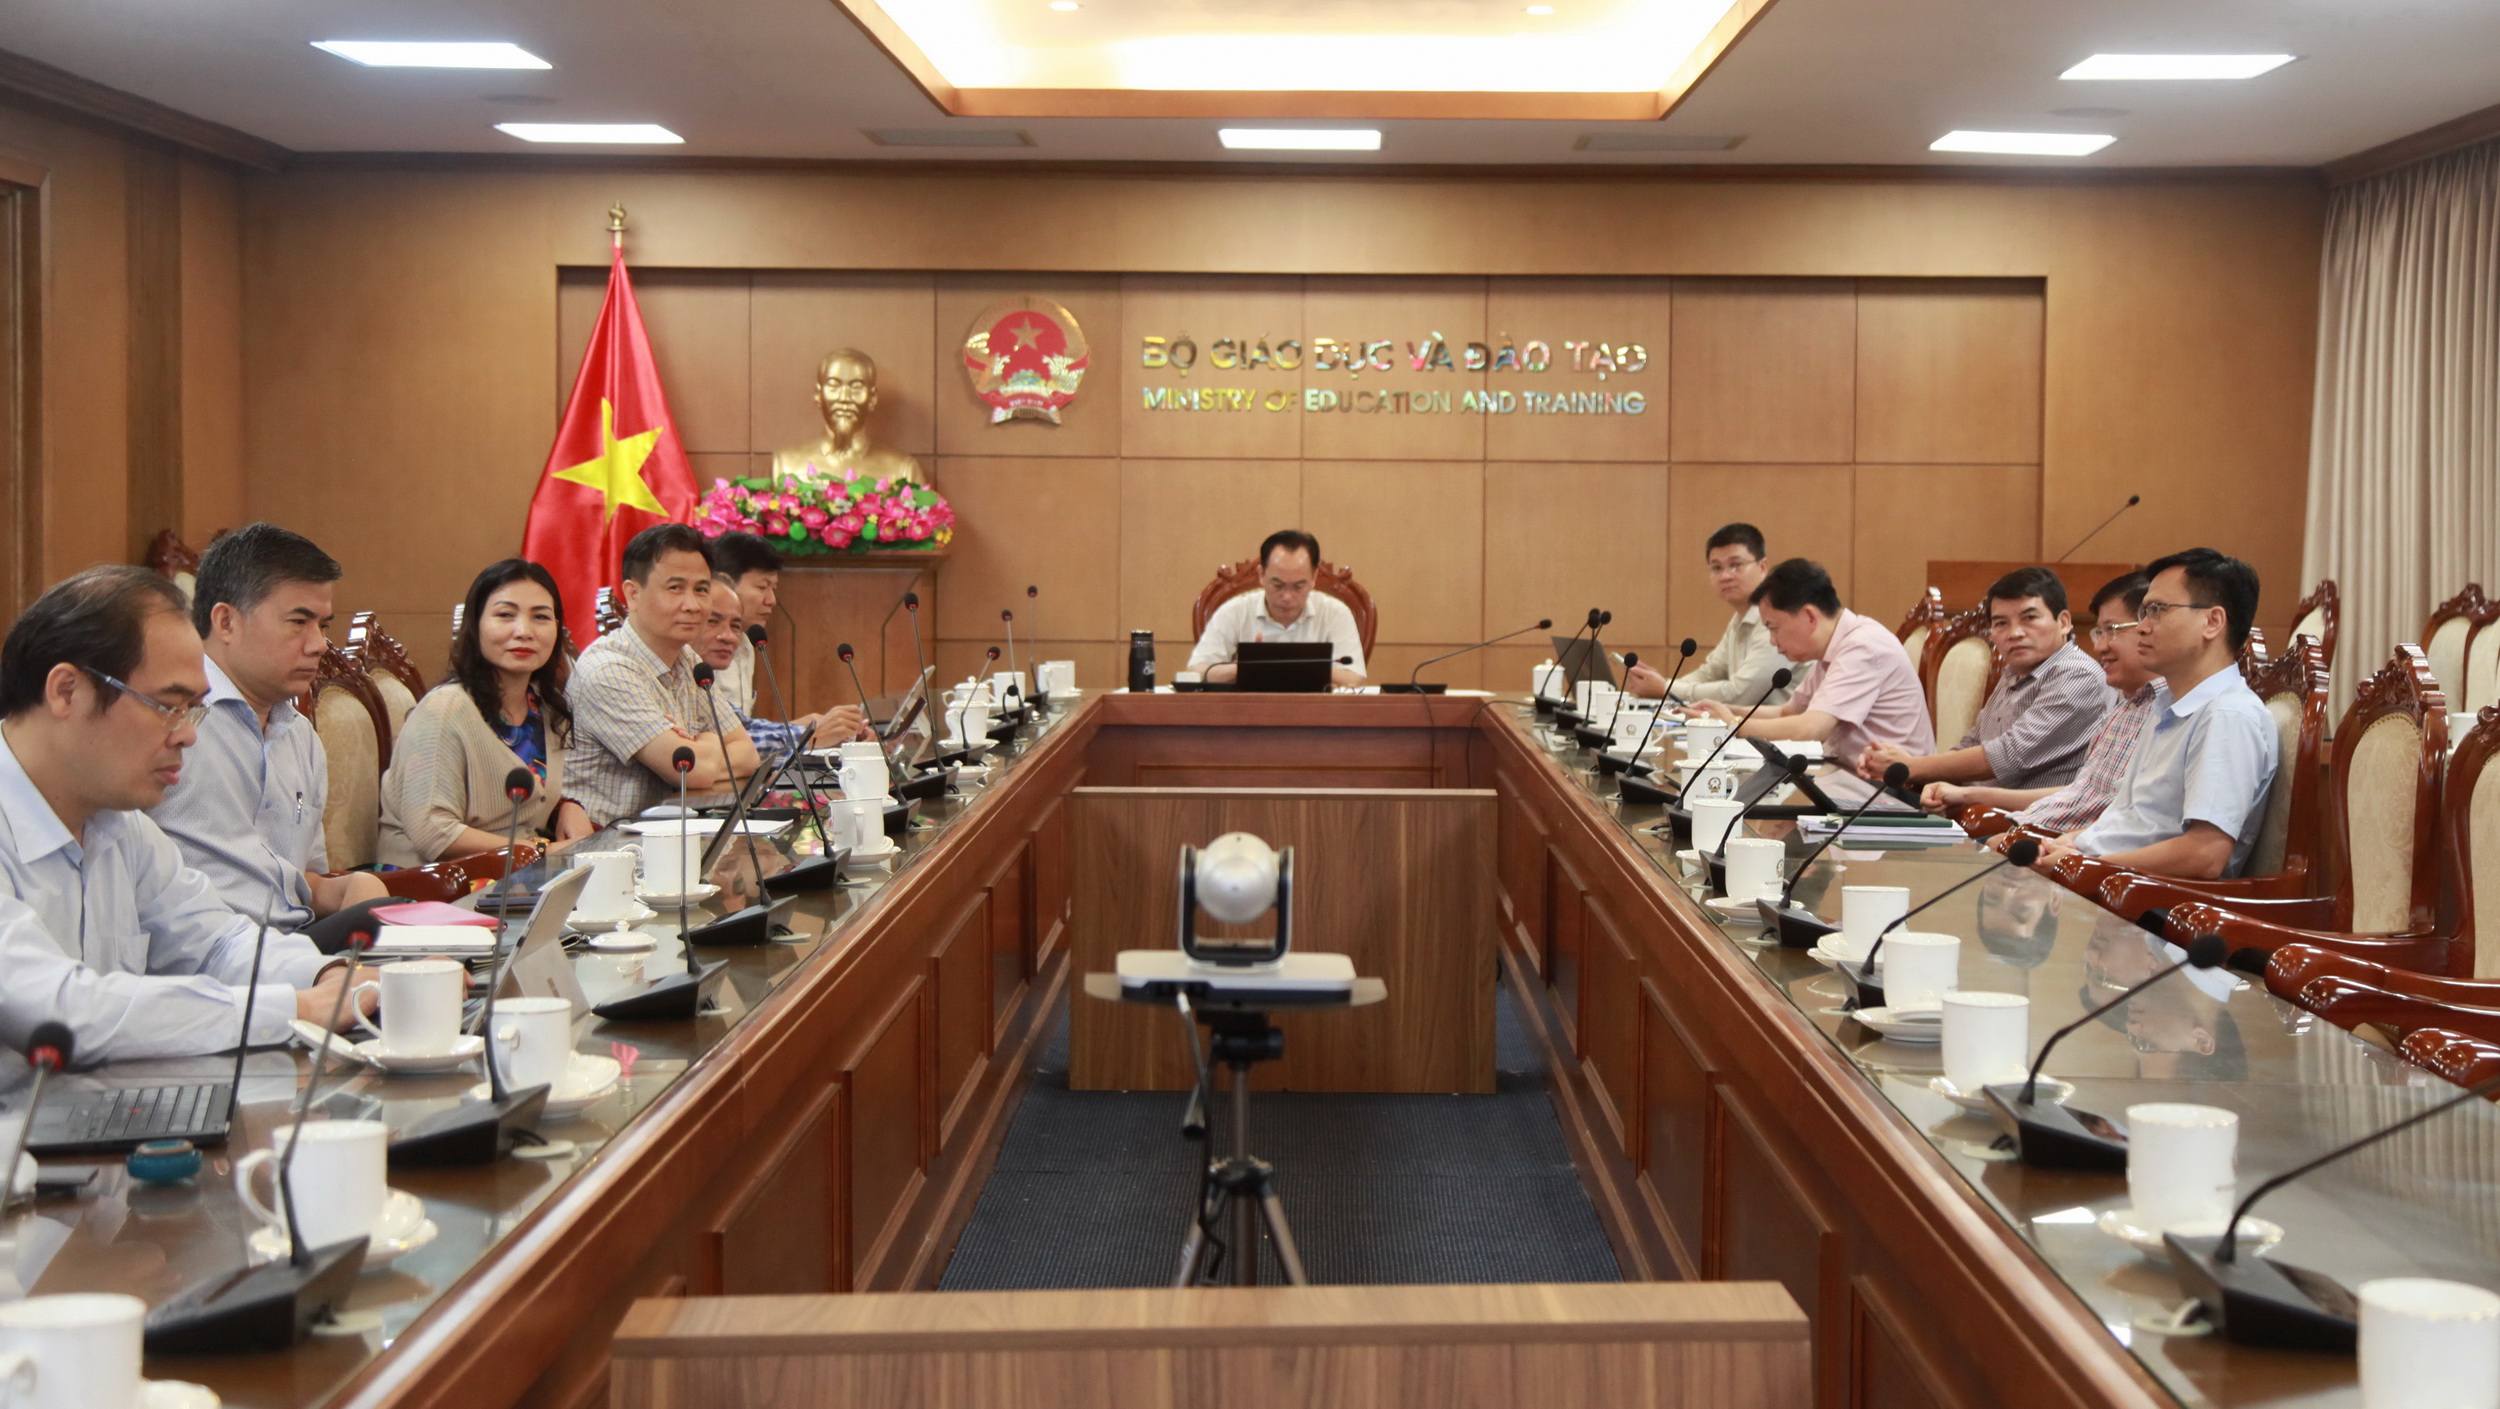 Thứ trưởng Hoàng Minh Sơn cùng lãnh đạo các đơn vị liên quan dự hội nghị tại điểm cầu Bộ GD&ĐT.